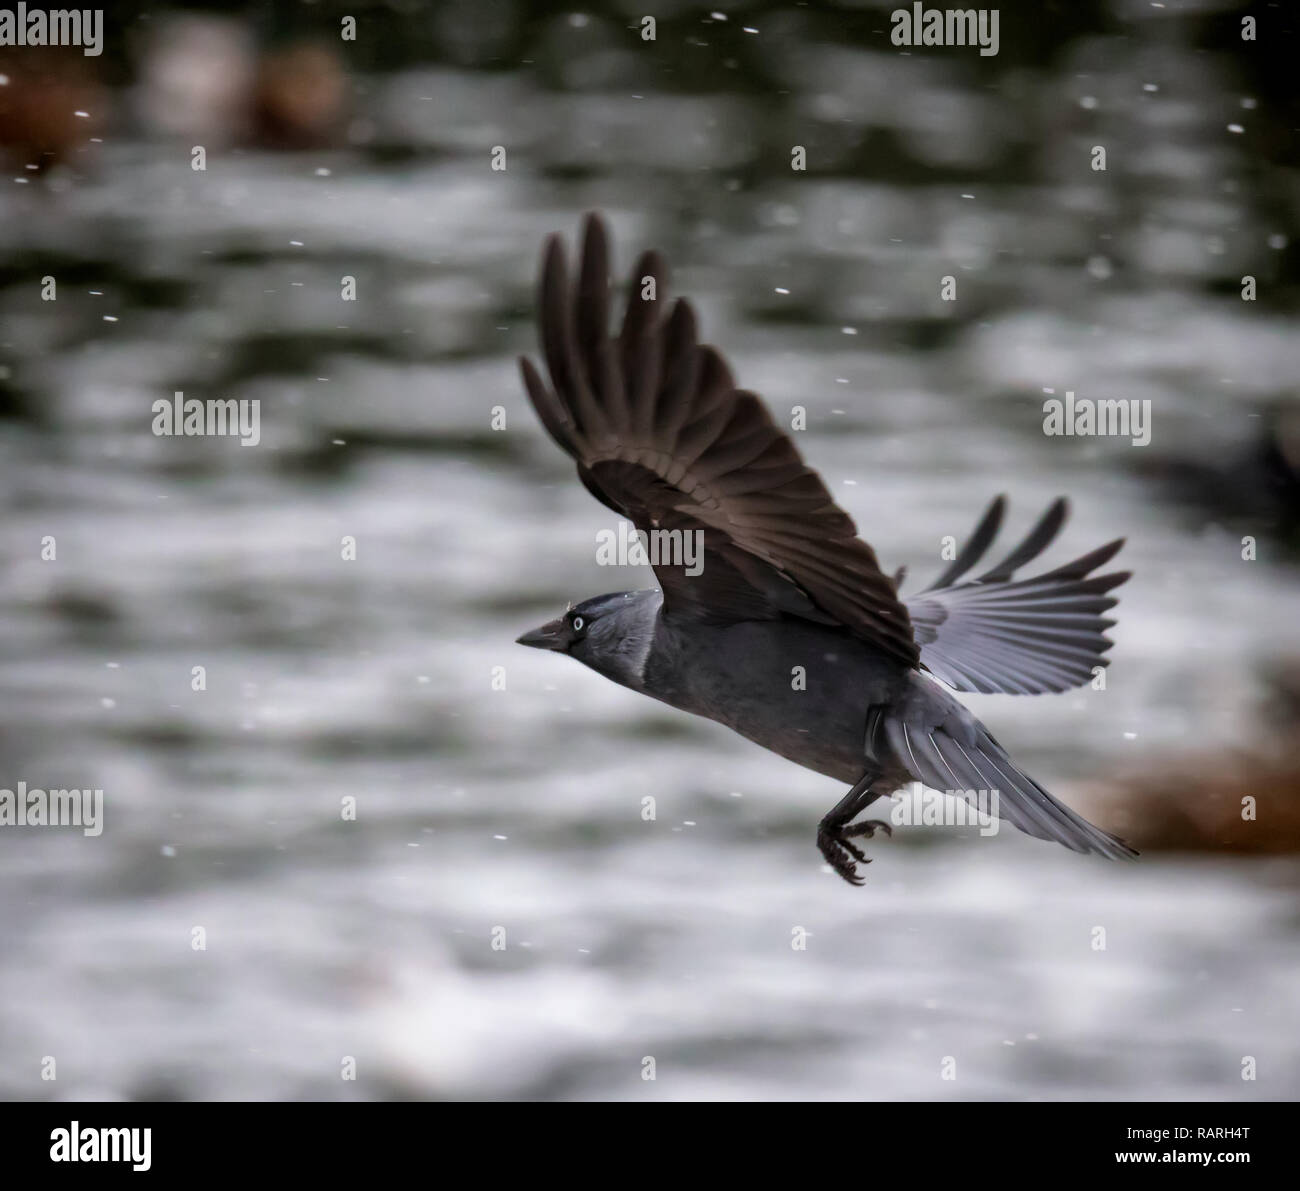 Choucas corbeau en vol d'importantes chutes de neige Banque D'Images